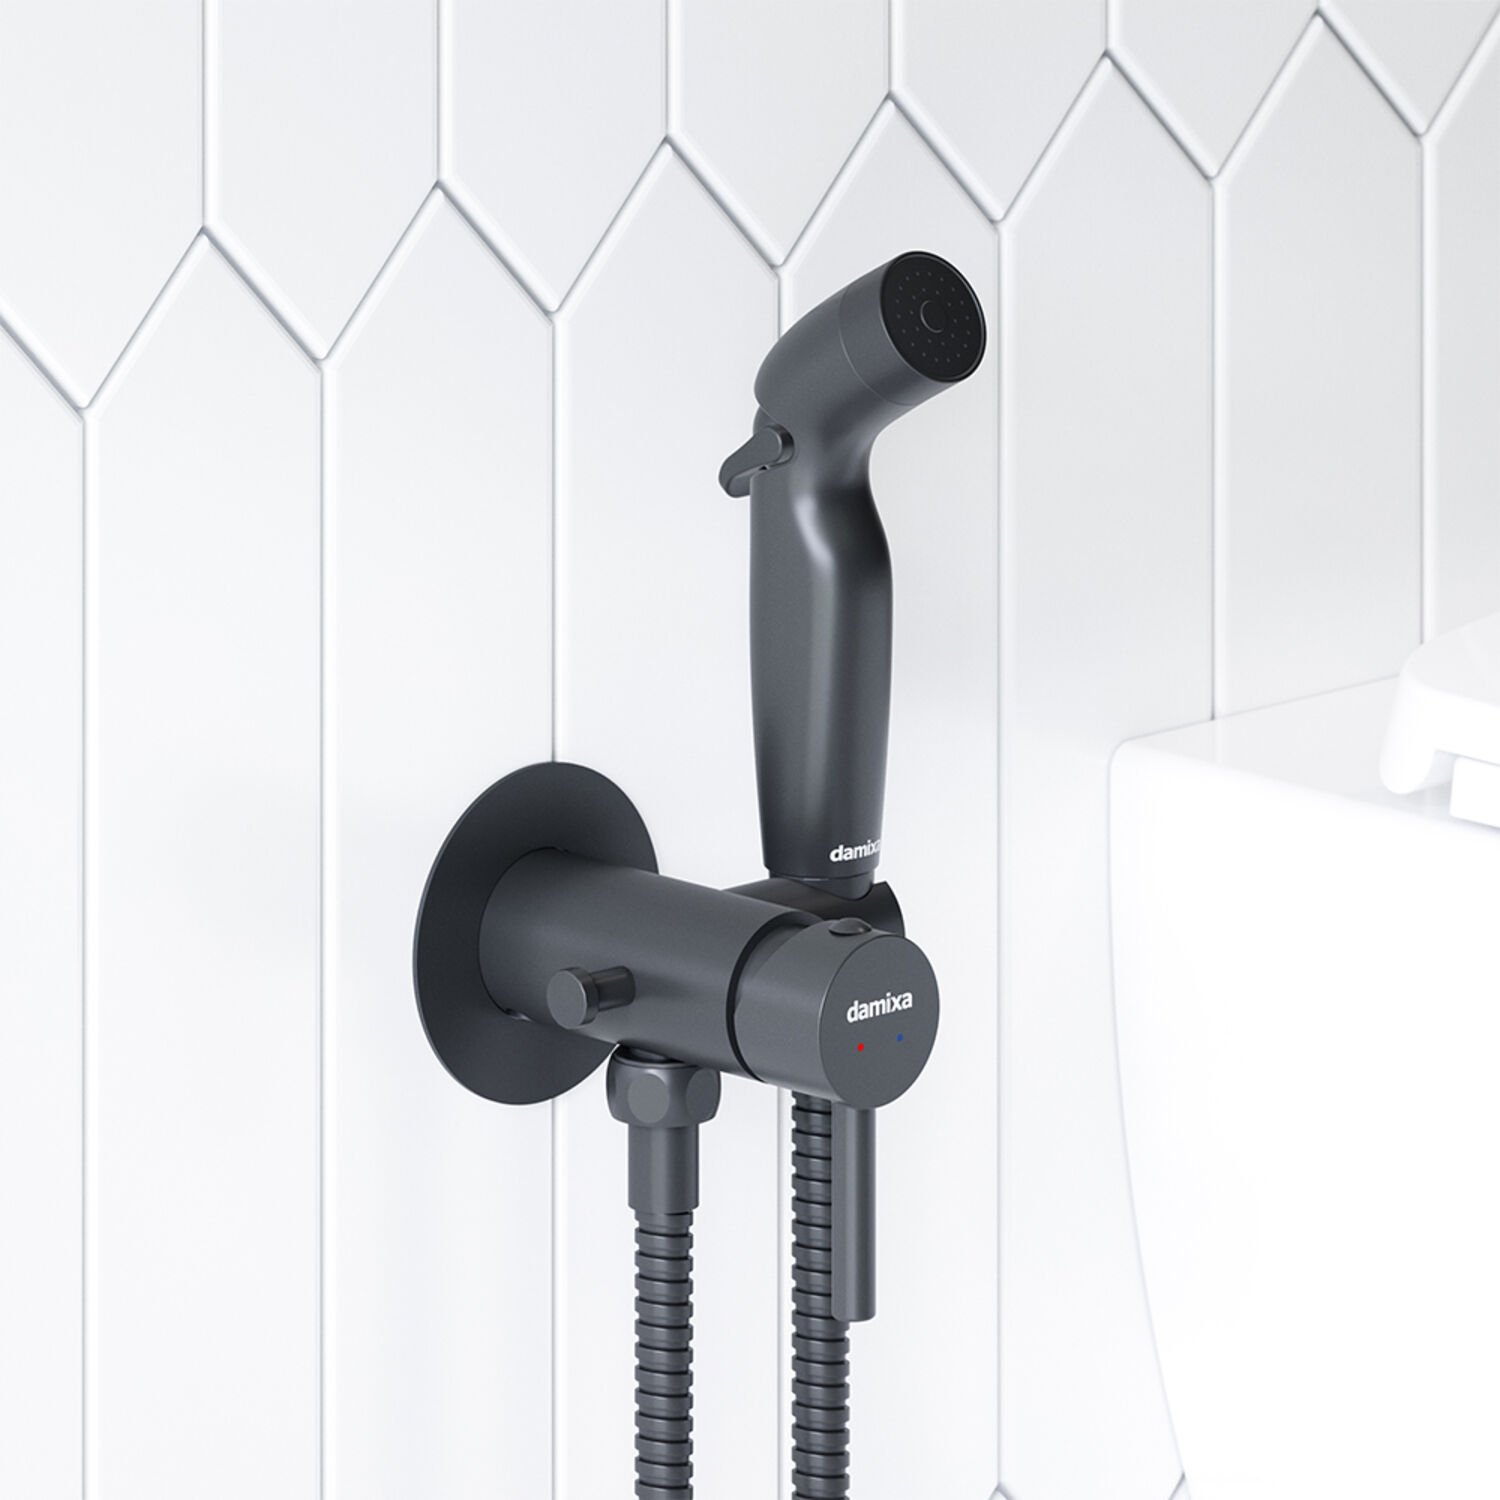 Гигиенический душ Damixa Option 211000300, со встраиваемым смесителем, с крючком, цвет черный - фото 1